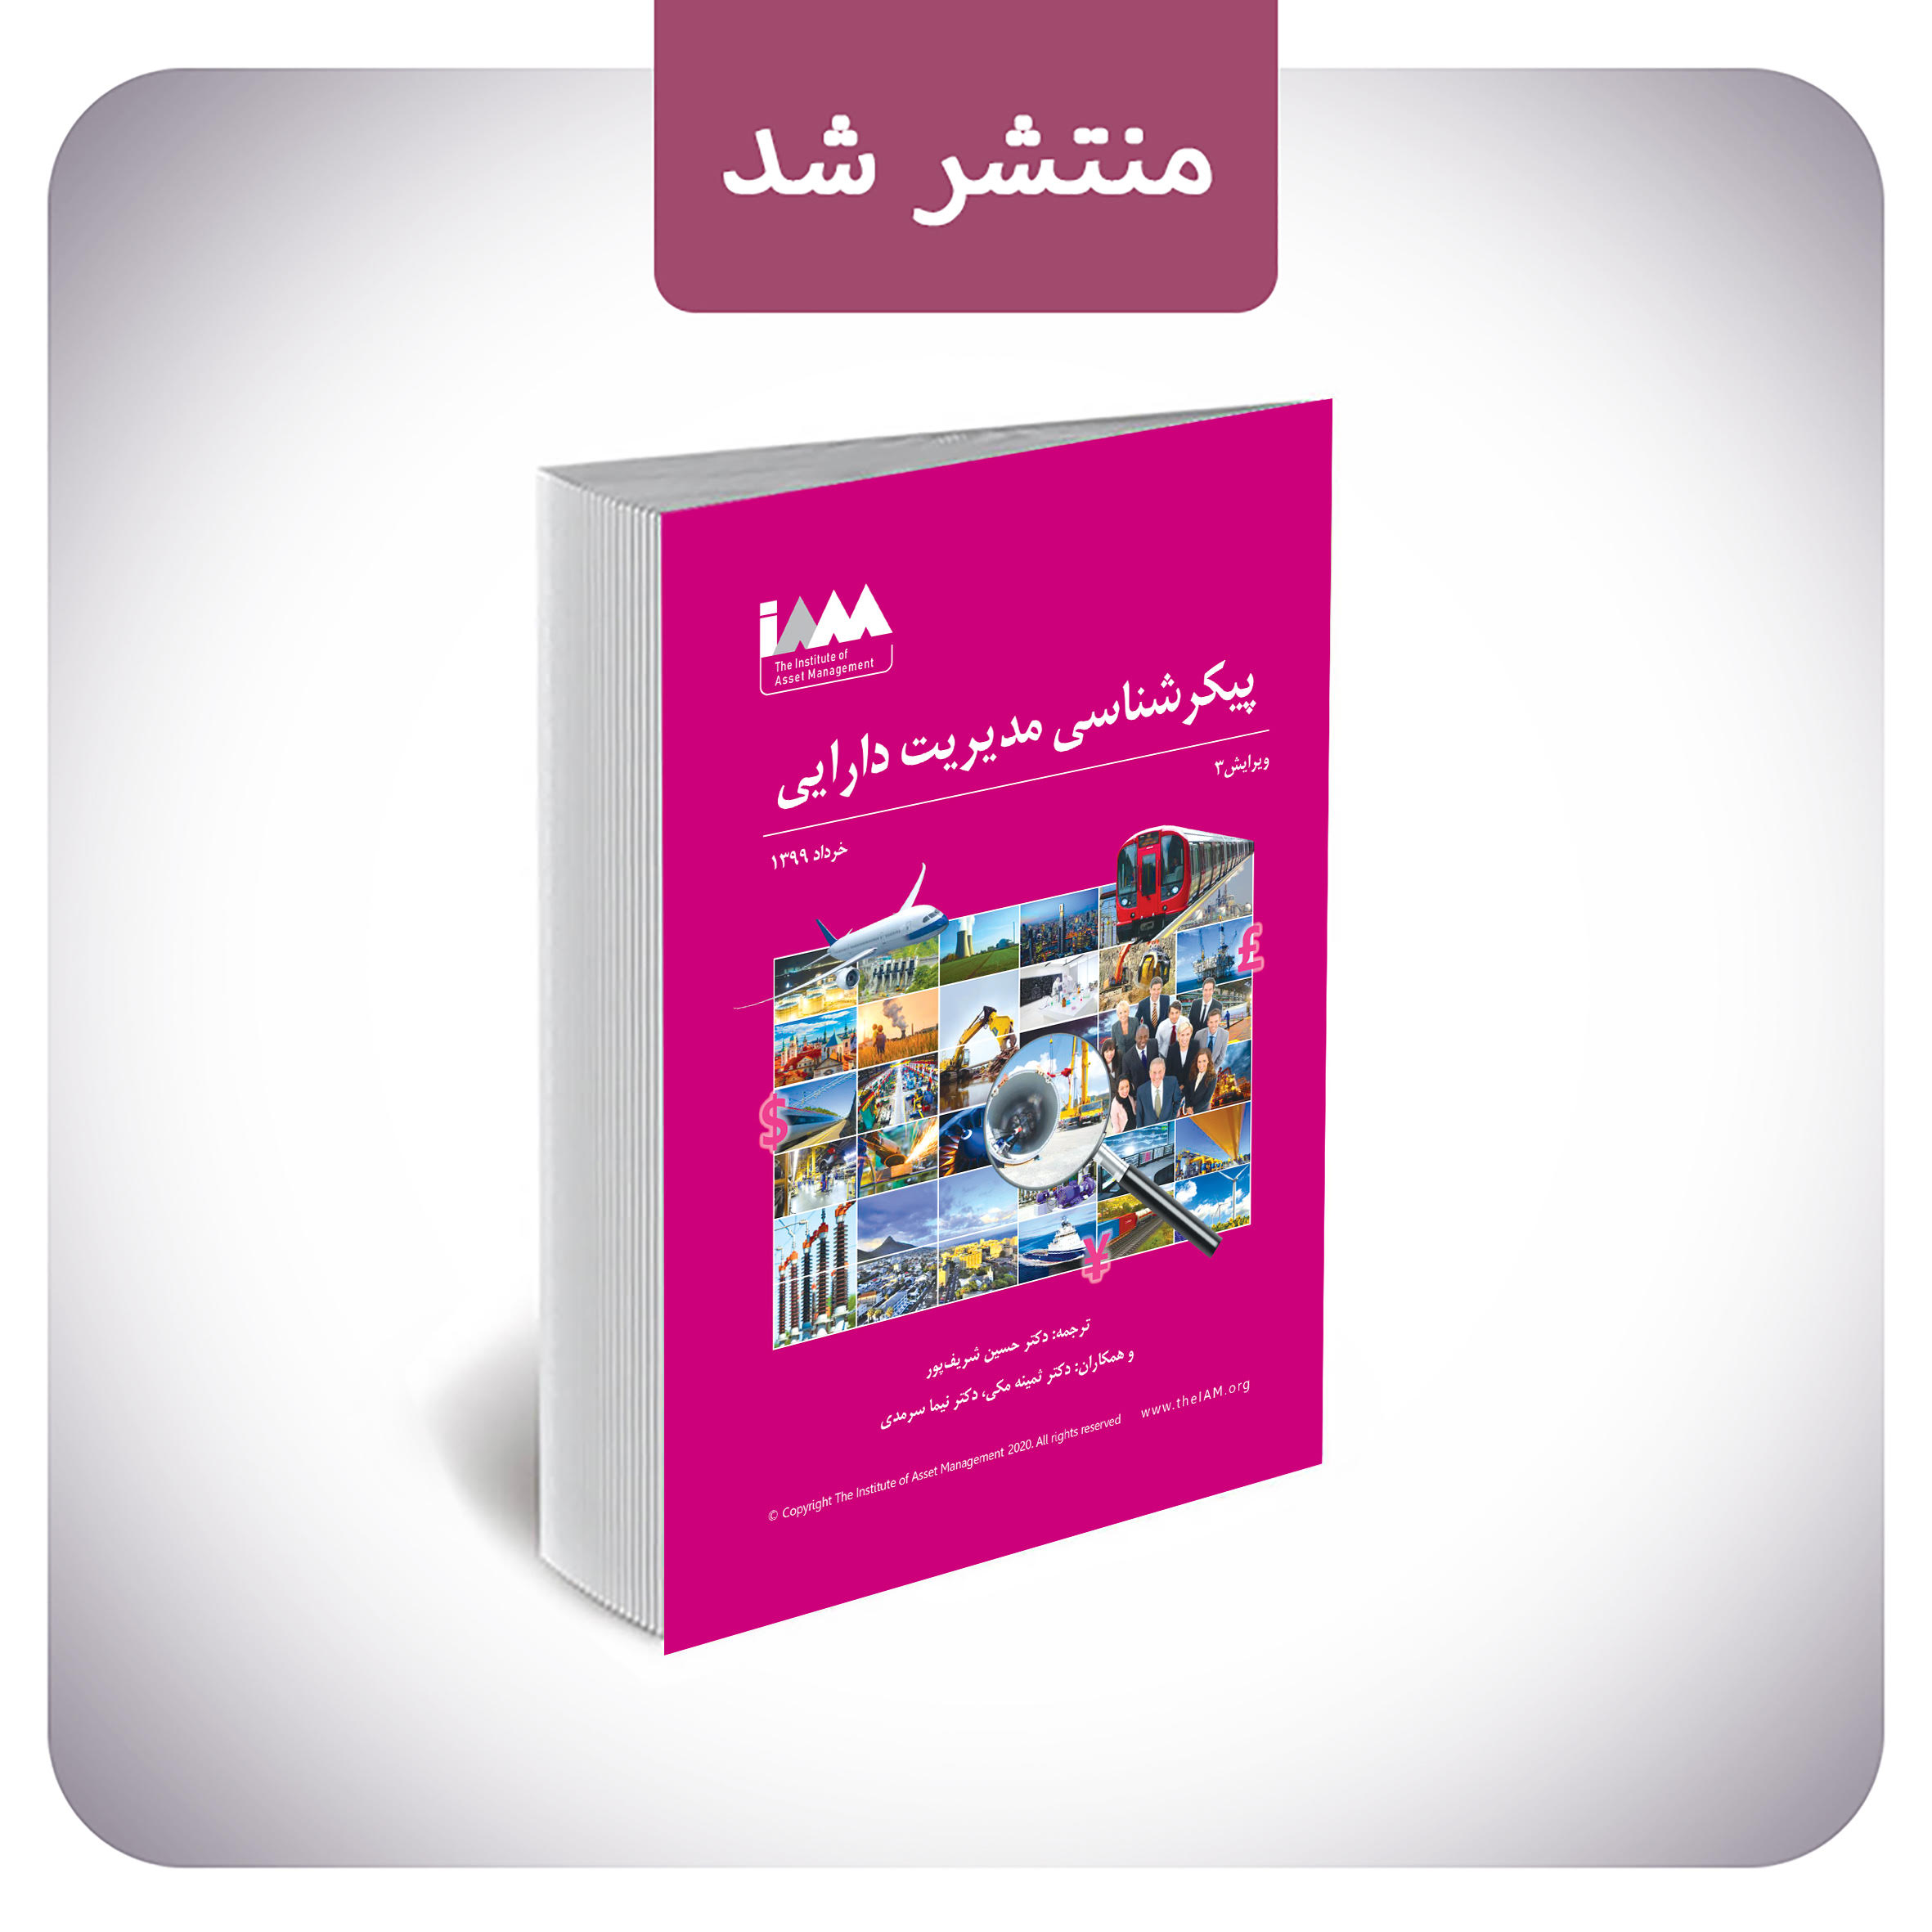 پیام مدیر موسسه مدیریت دارایی (IAM) به مناسبت انتشار کتاب پیکرشناسی مدیریت دارایی به زبان فارسی در ایران